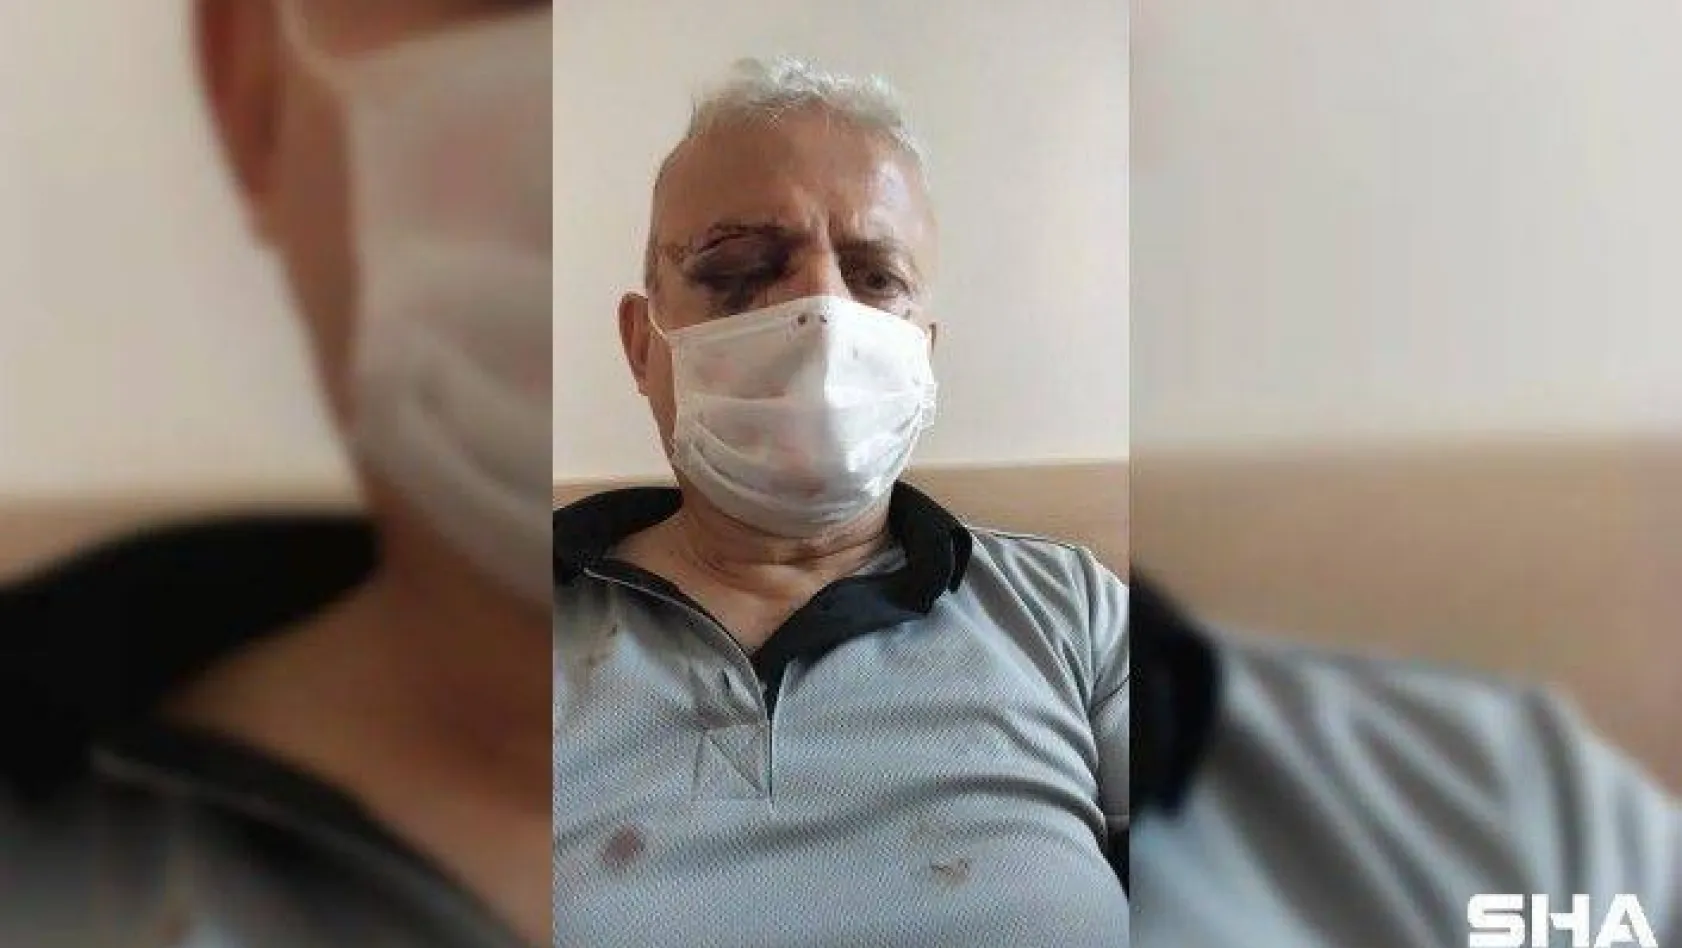 Maske uyarısında bulunduğu şahıs tarafından darp edilen güvenlik görevlisi görme yetisini kaybetti